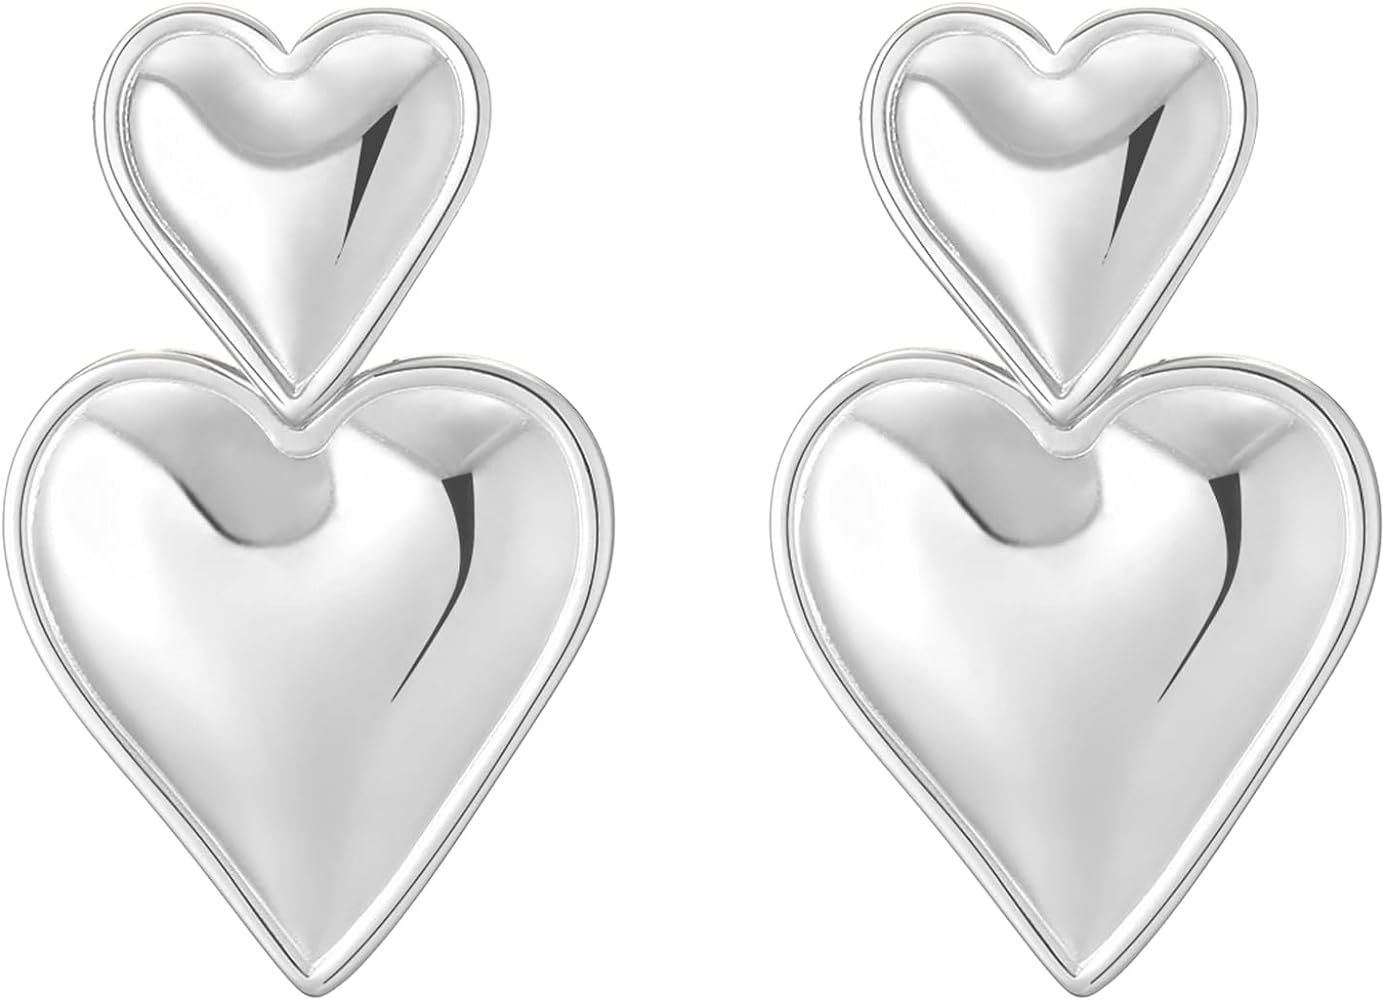 Apsvo Chunky Gold Heart Earrings for Women, Lightweight Drop Earrings Dangle Double Heart Earring... | Amazon (US)